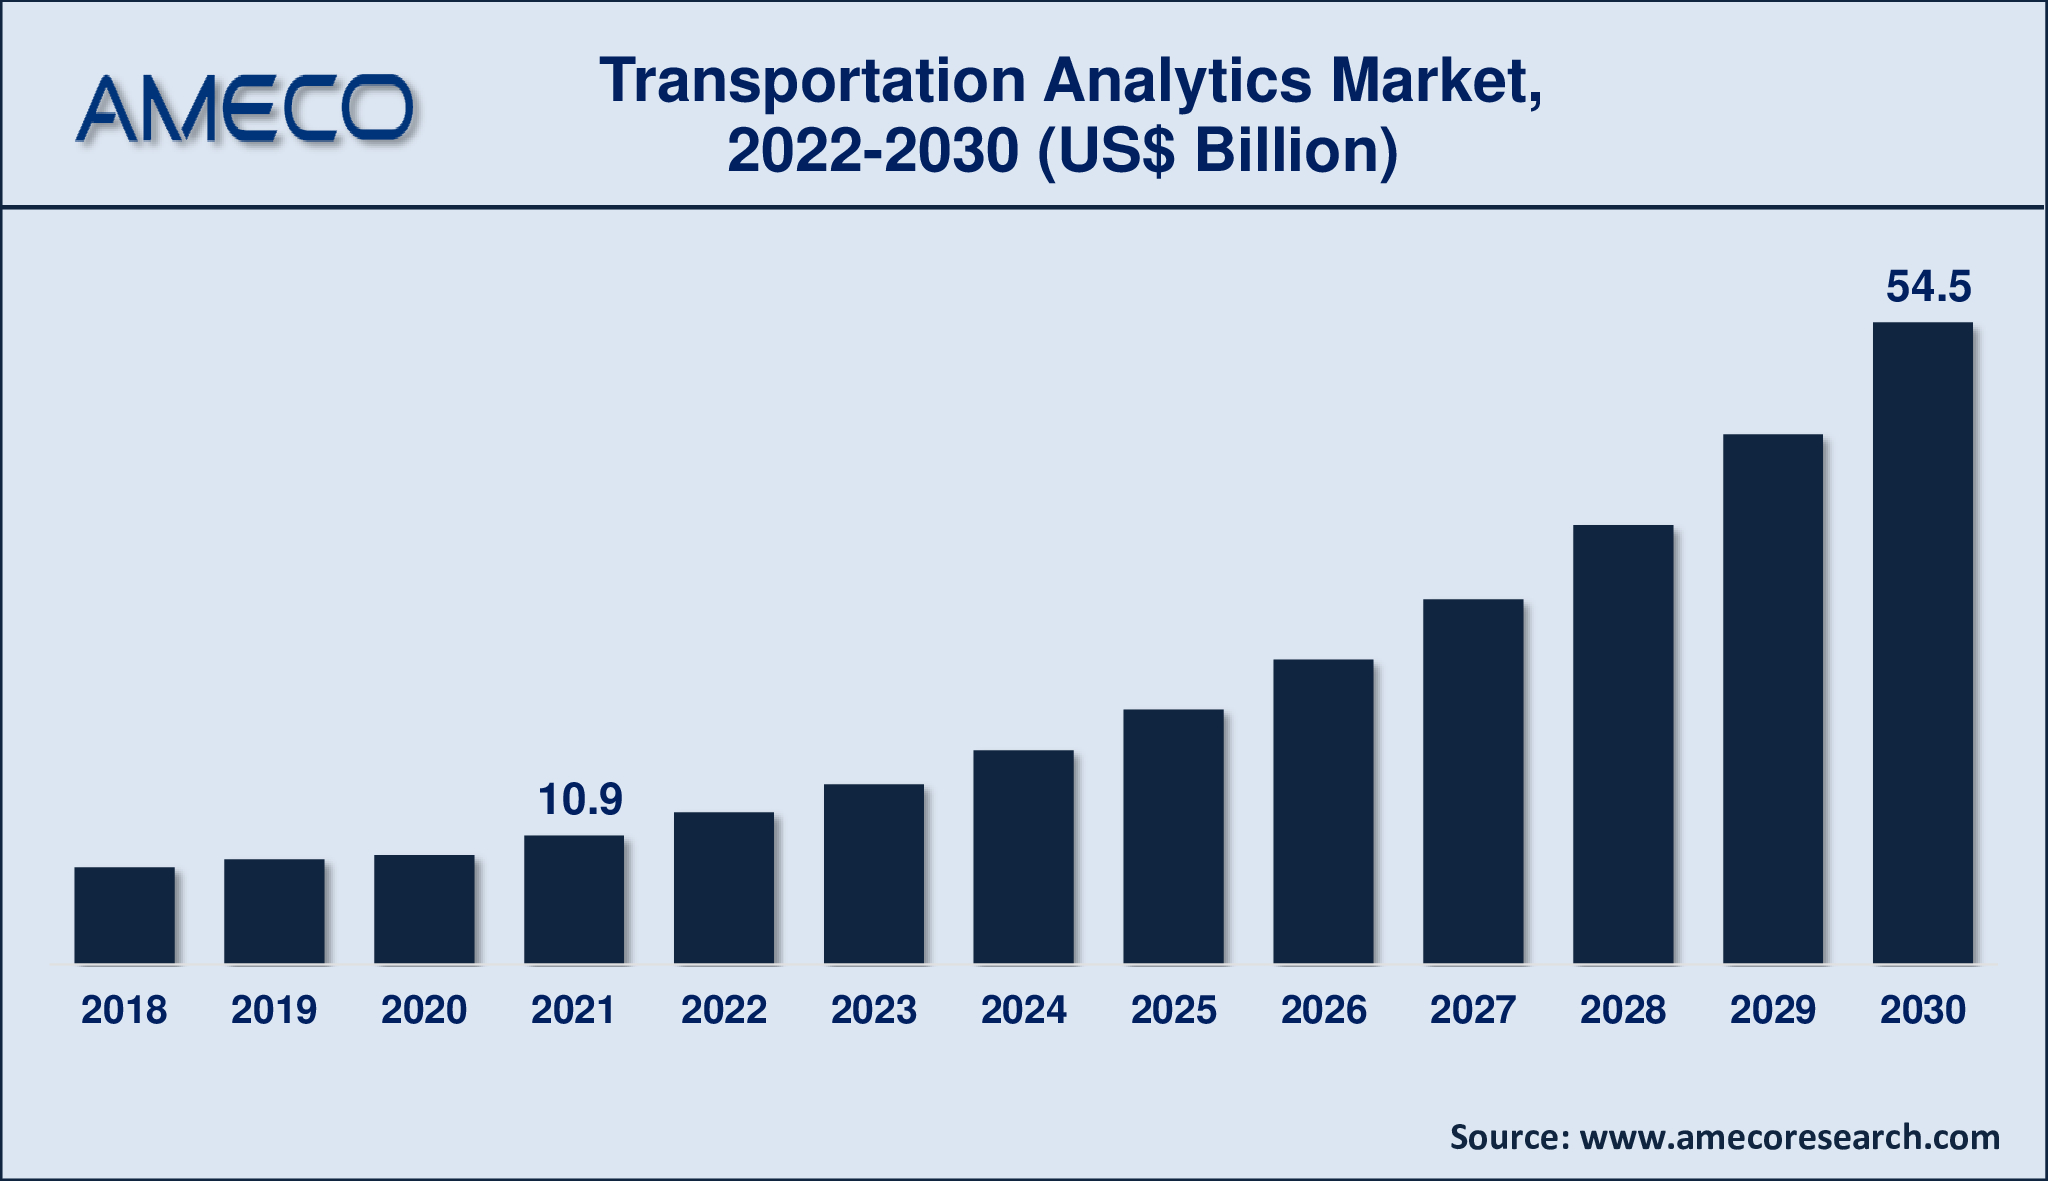 Transportation Analytics Market Revenue